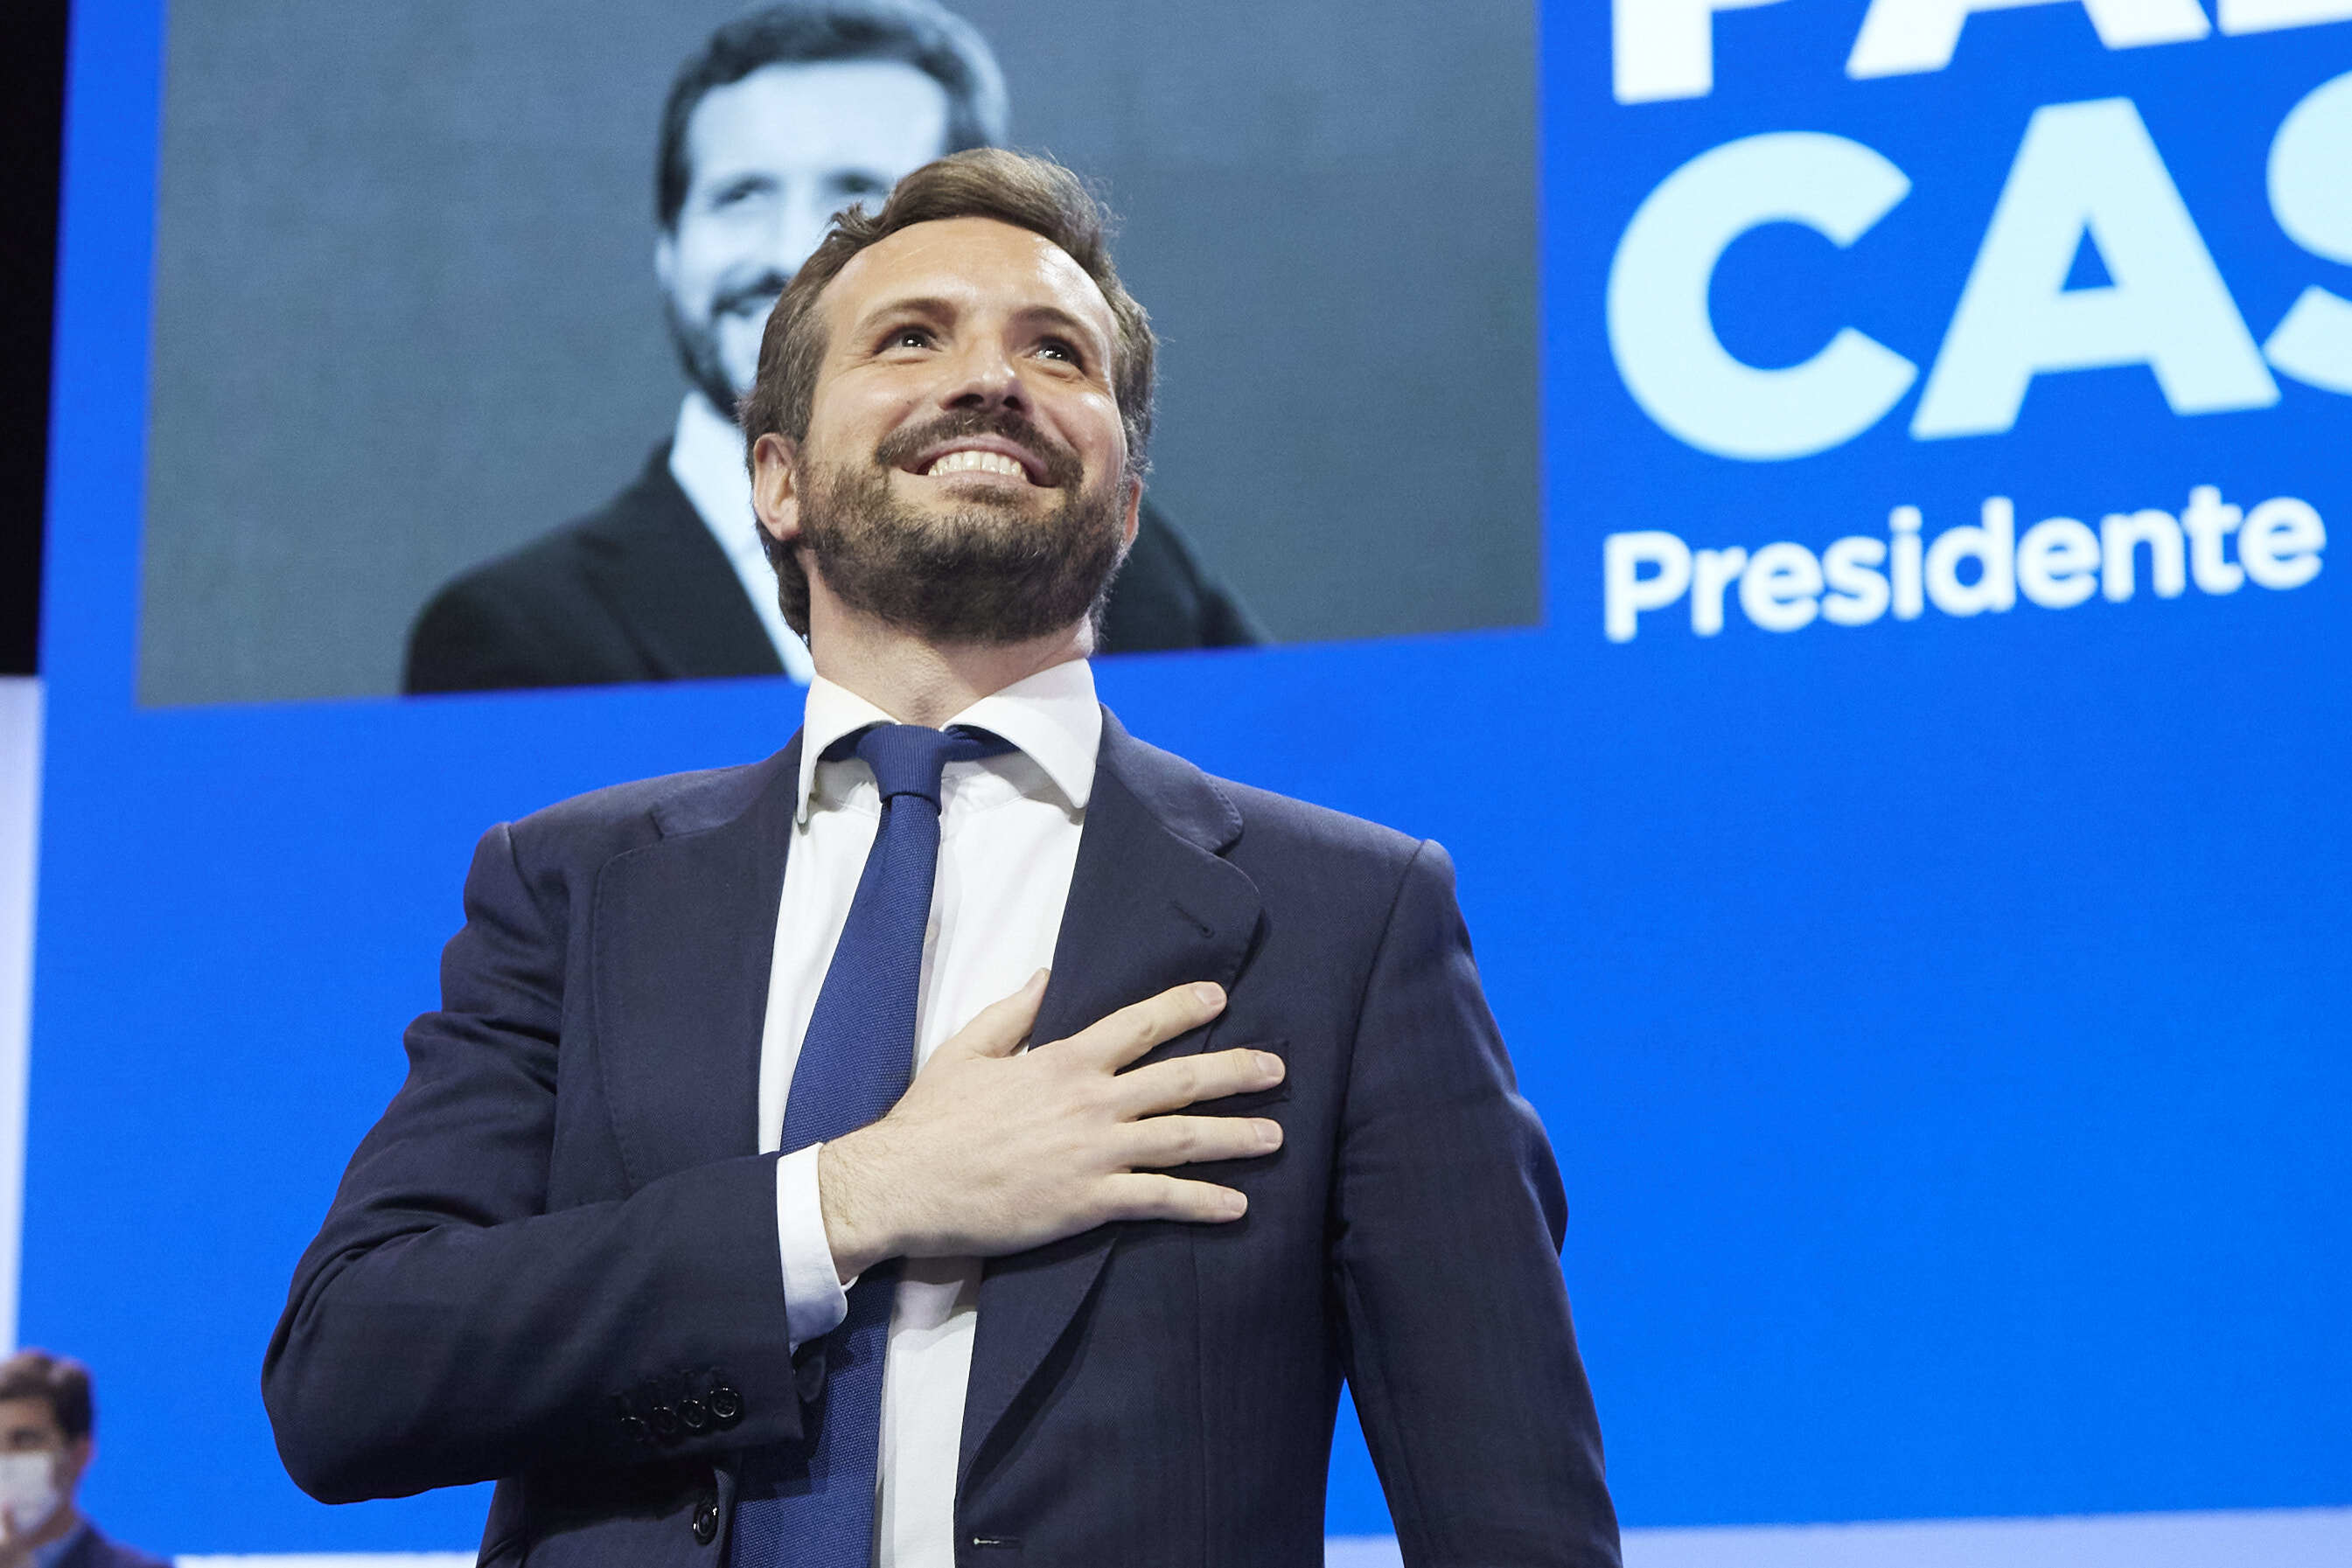 El PP descarta volver a contar con Pablo Casado en primera línea: "No suma"